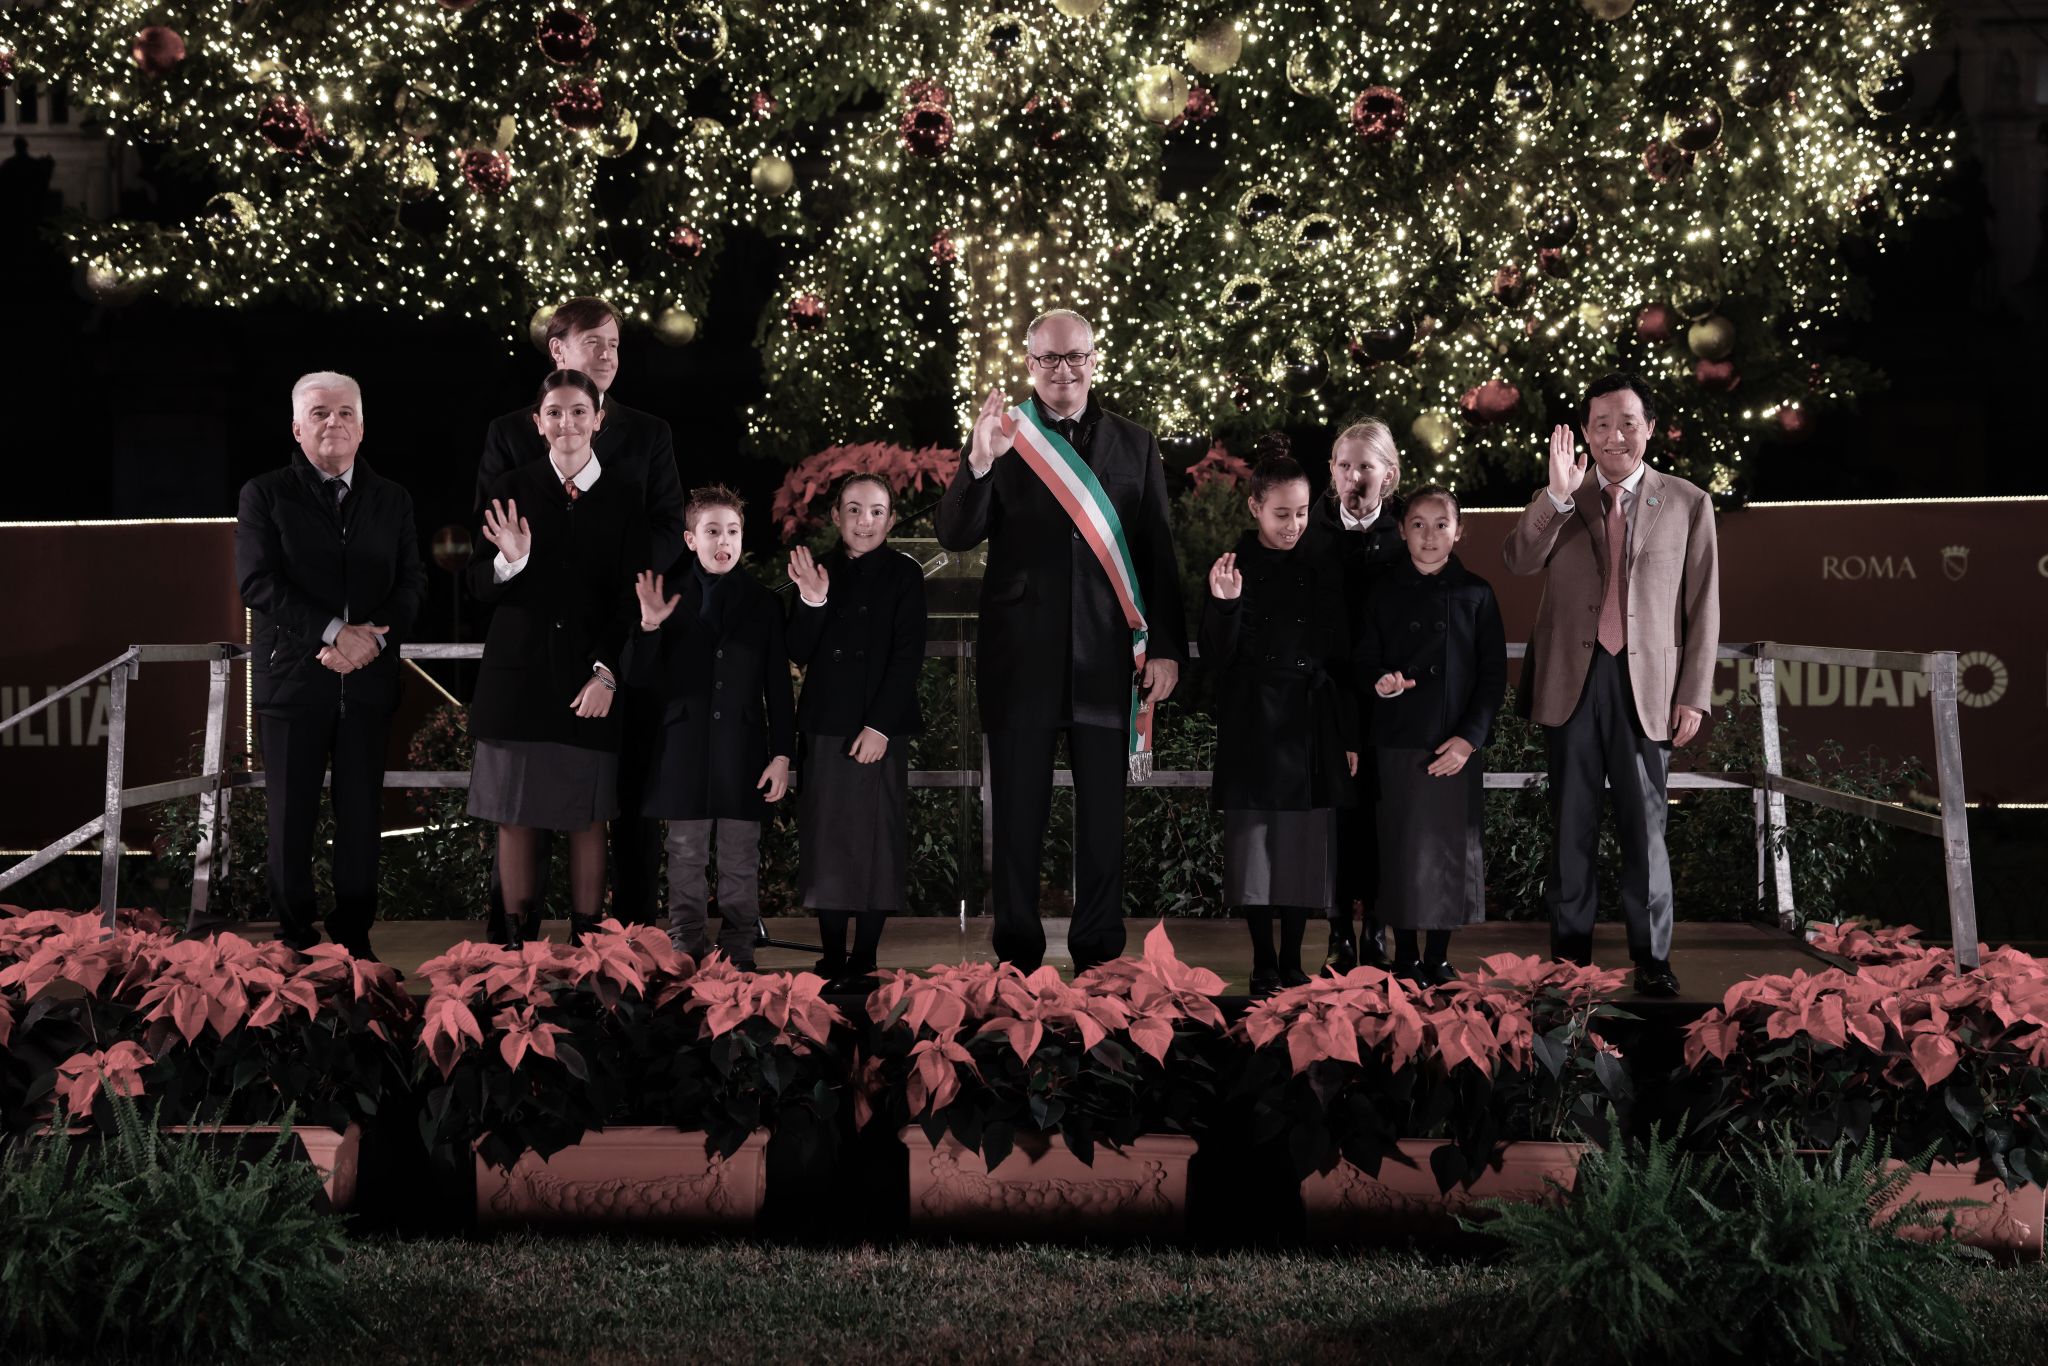 El tradicional árbol de Navidad de Roma se ilumina de manera sostenible